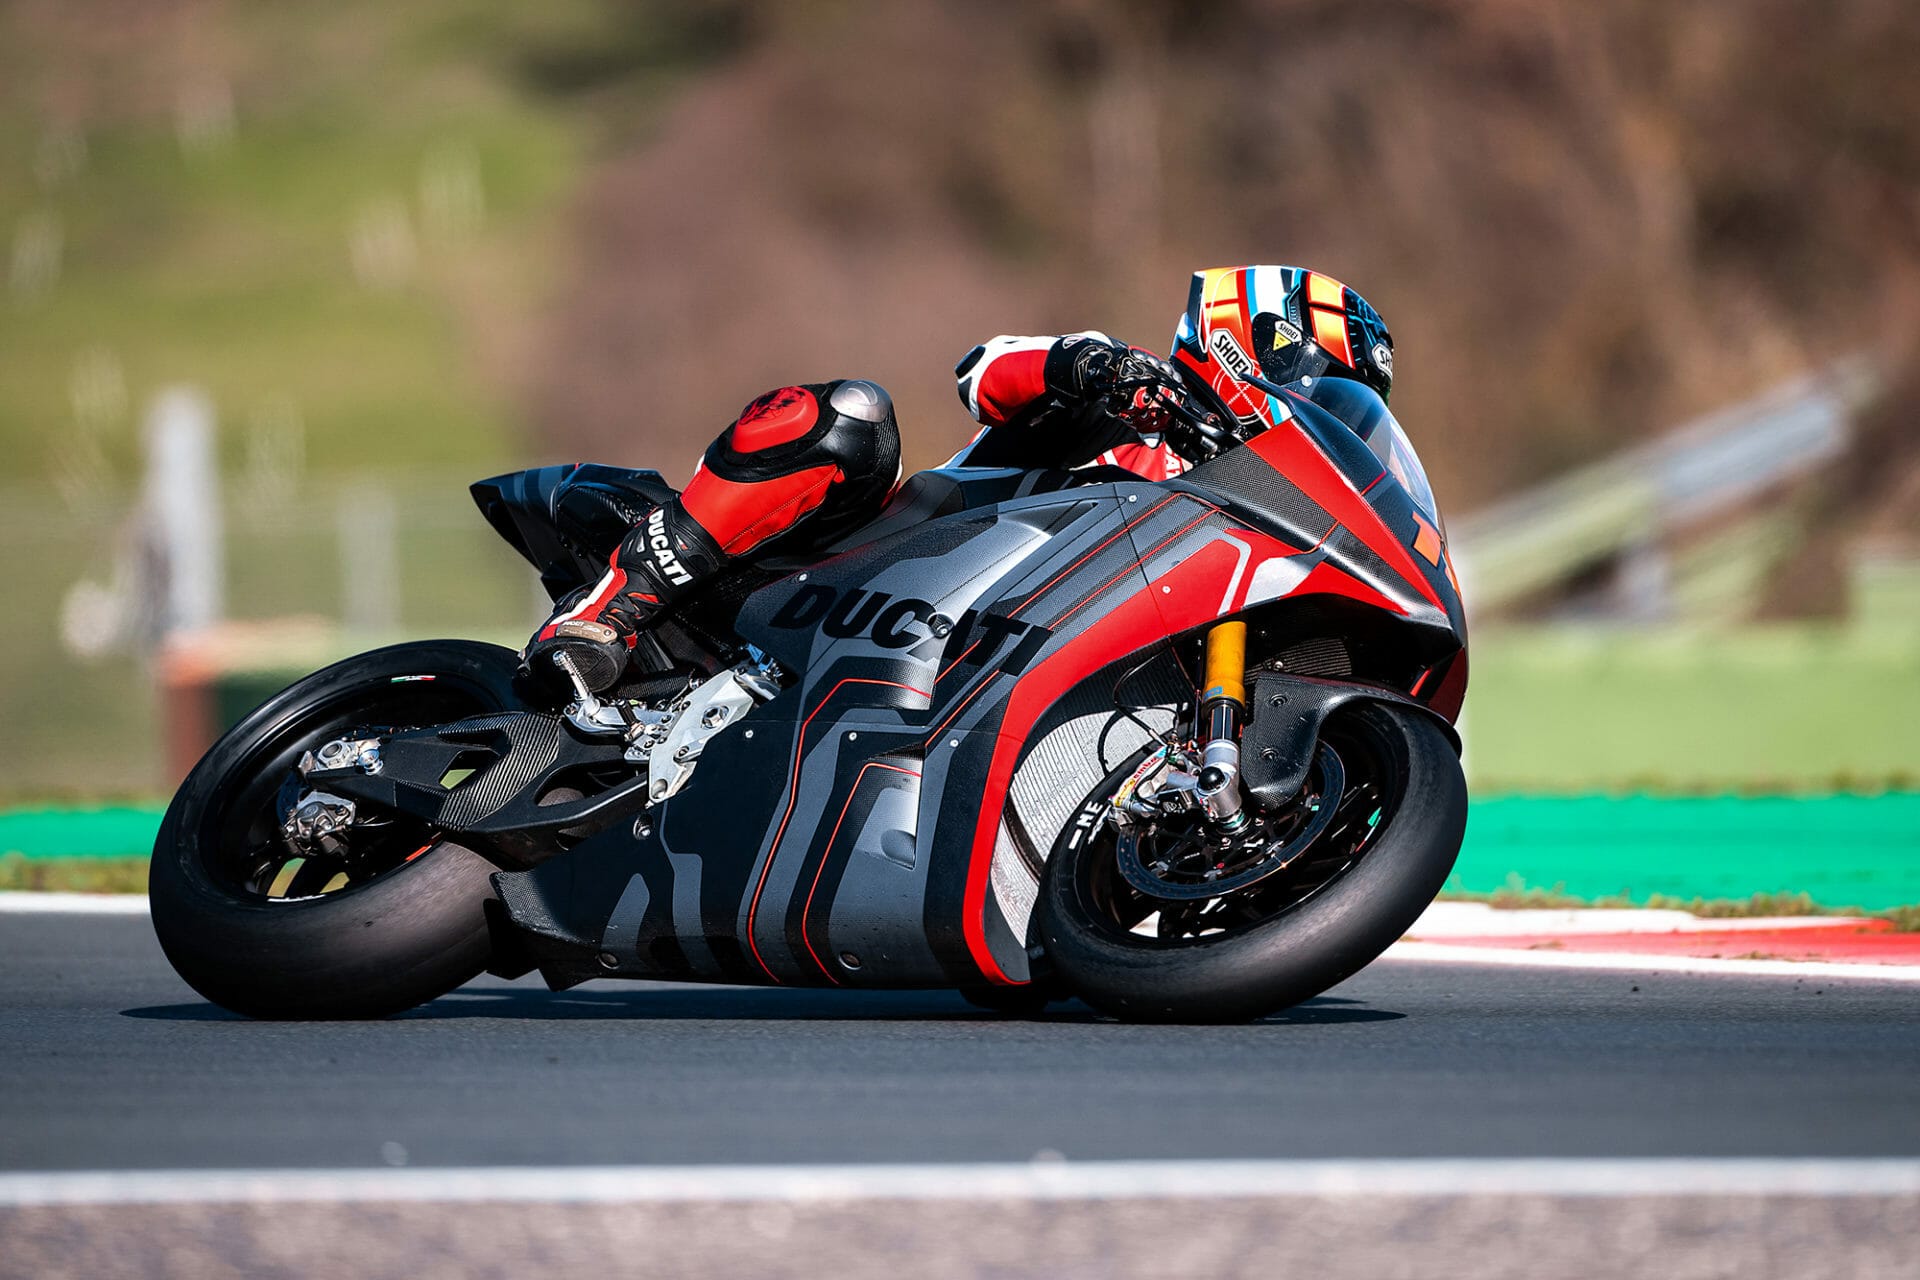 Ducati's V21L unveiled for MotoE - MOTORCYCLES.NEWS via @motorradnachrichten